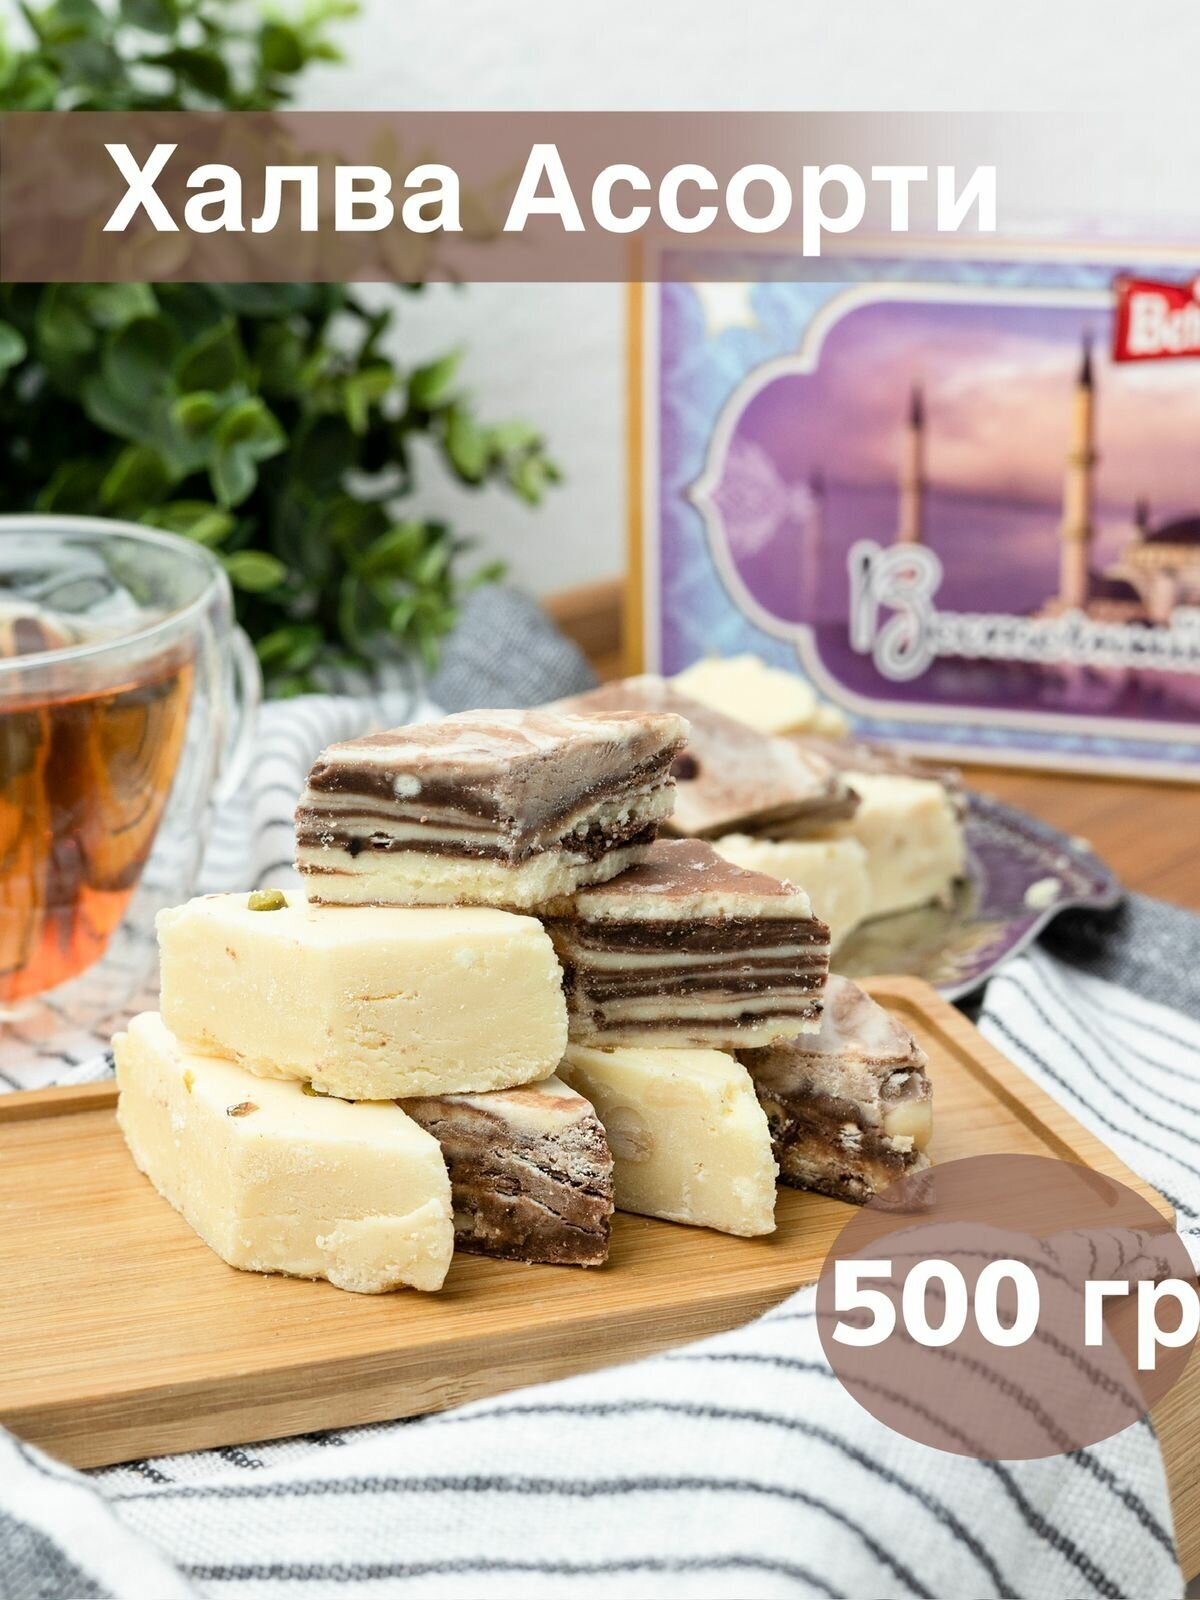 Халва Мраморная Ассорти 500 г, восточные сладости